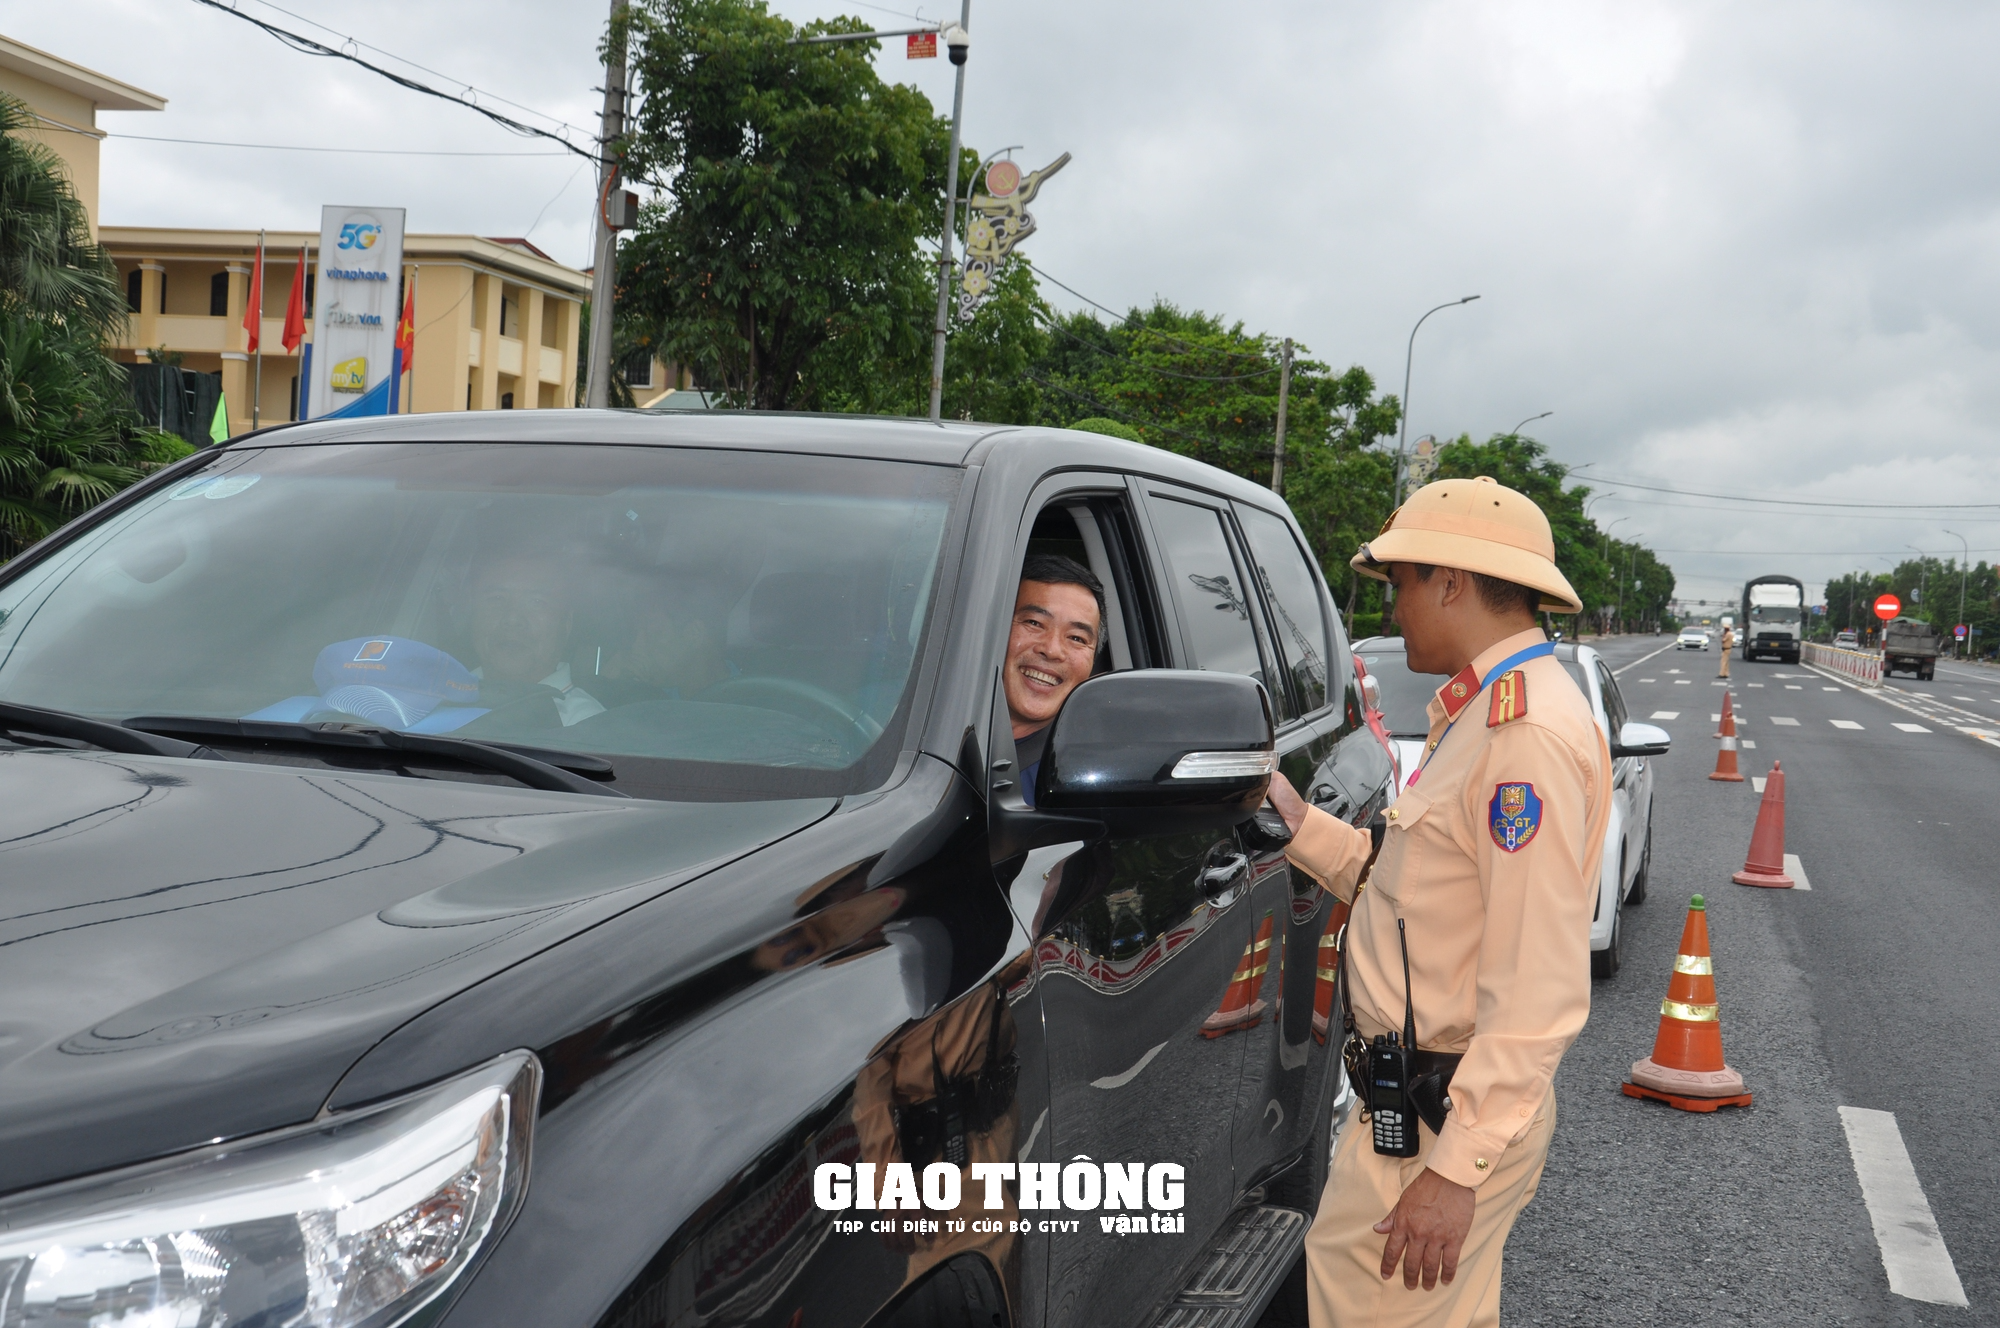 Dàn trận xử lý nồng độ cồn trên QL1 ở tỉnh Thừa Thiên-Huế: Loạt người vi phạm sau bữa ăn trưa - Ảnh 6.